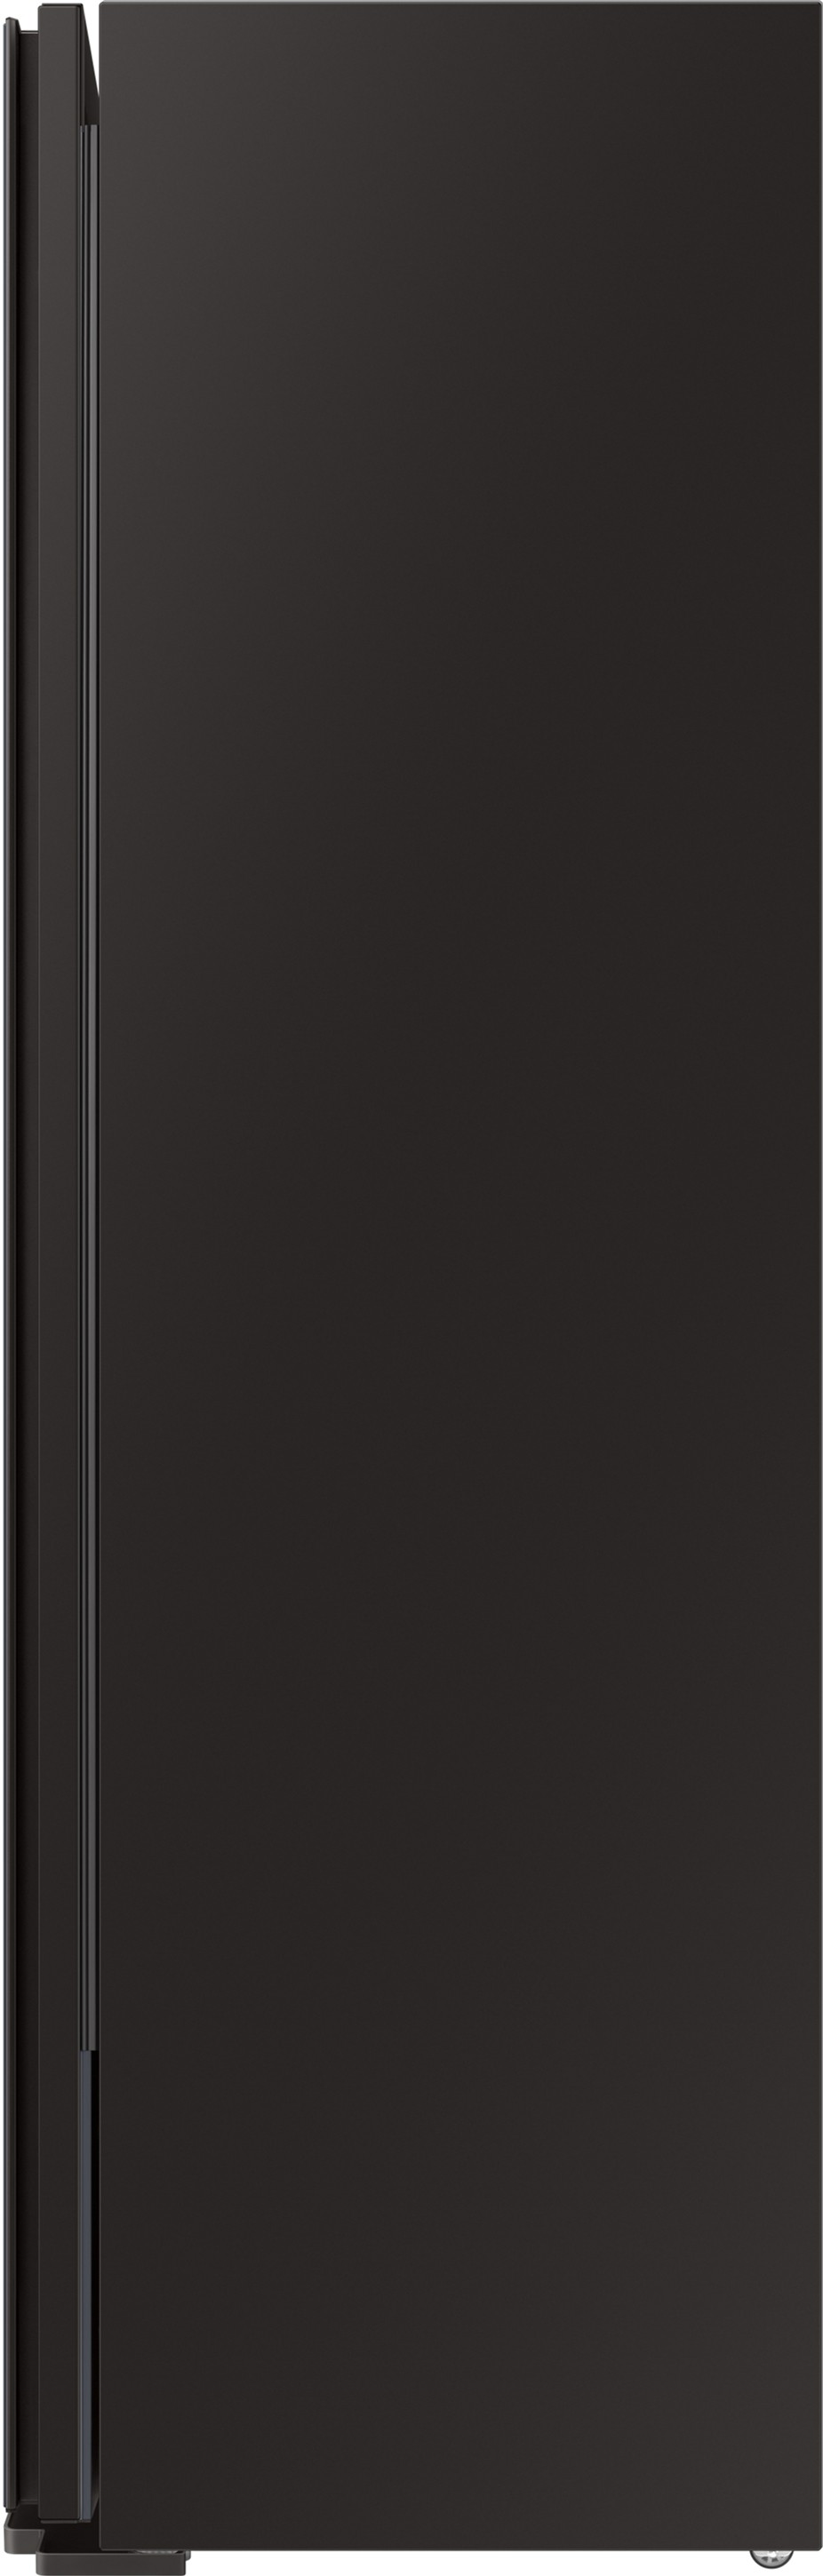 Паровой шкаф для ухода за одеждой Samsung DF10A9500CG/LP цена 72699.00 грн - фотография 2